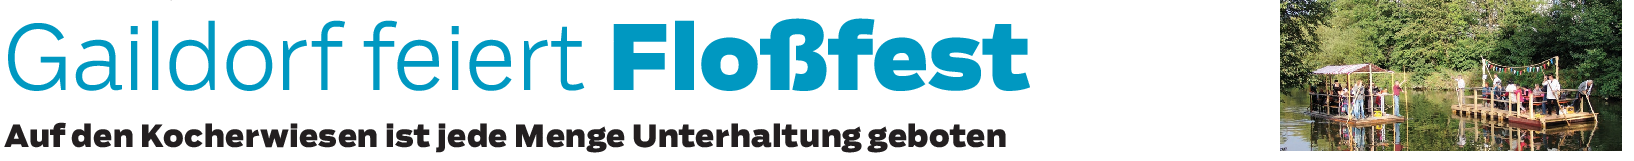 Floßfest in Gaildorf: Ein Fest für die ganze Familie